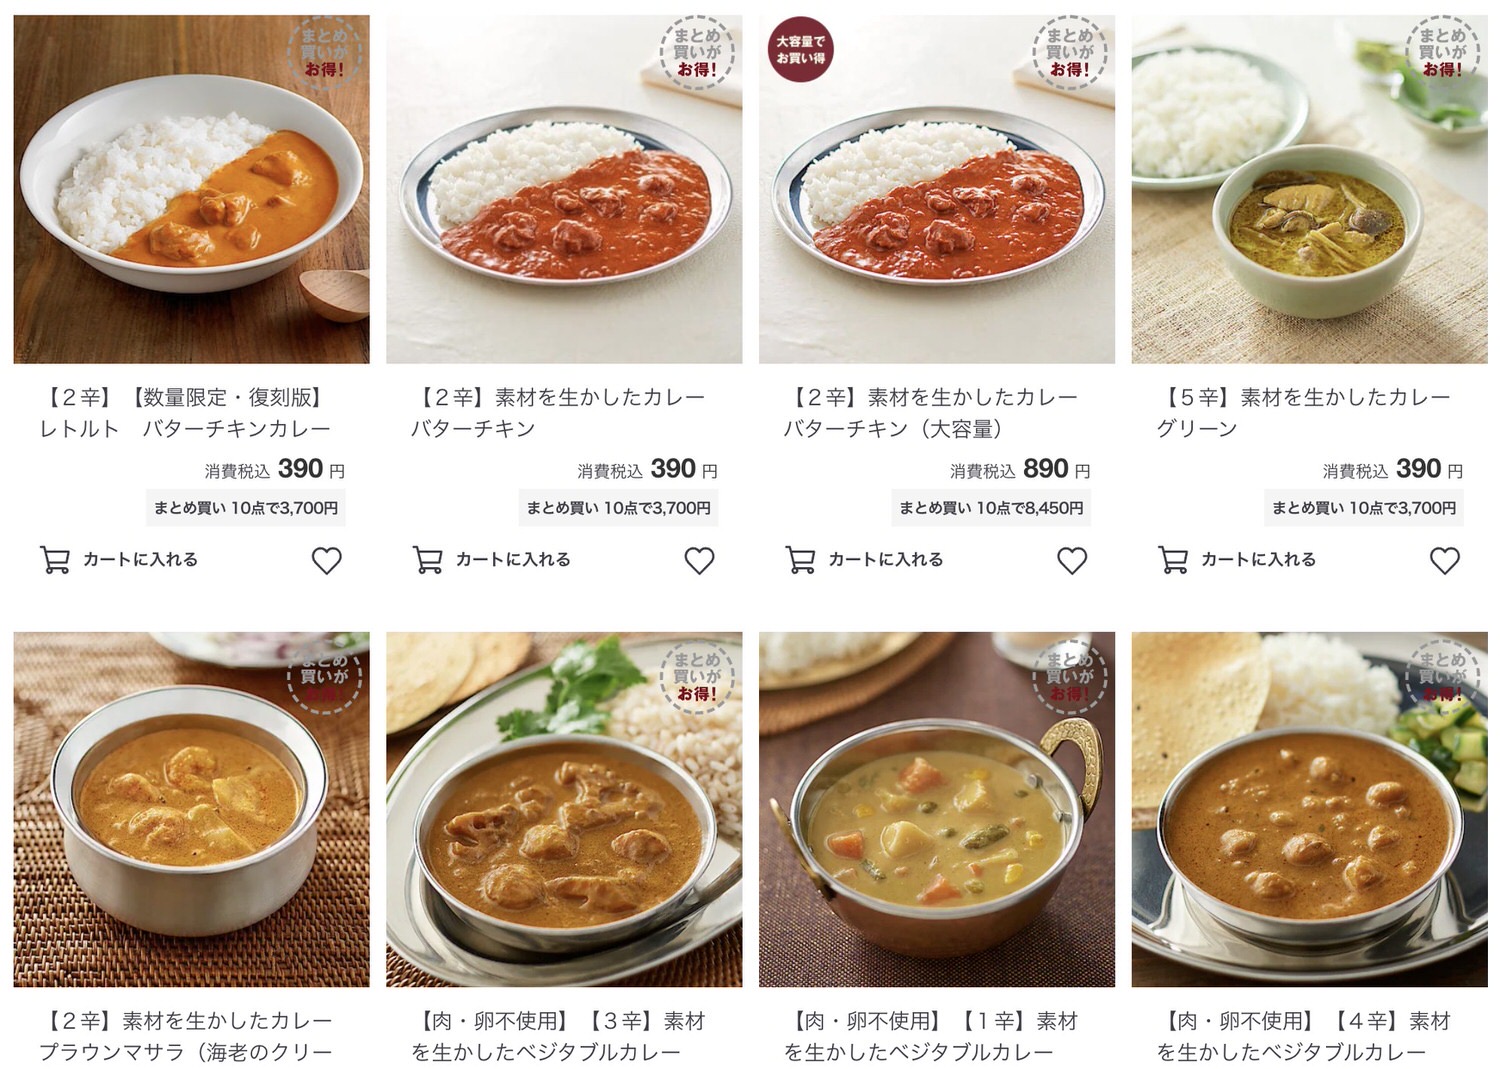 Muji curry ranking